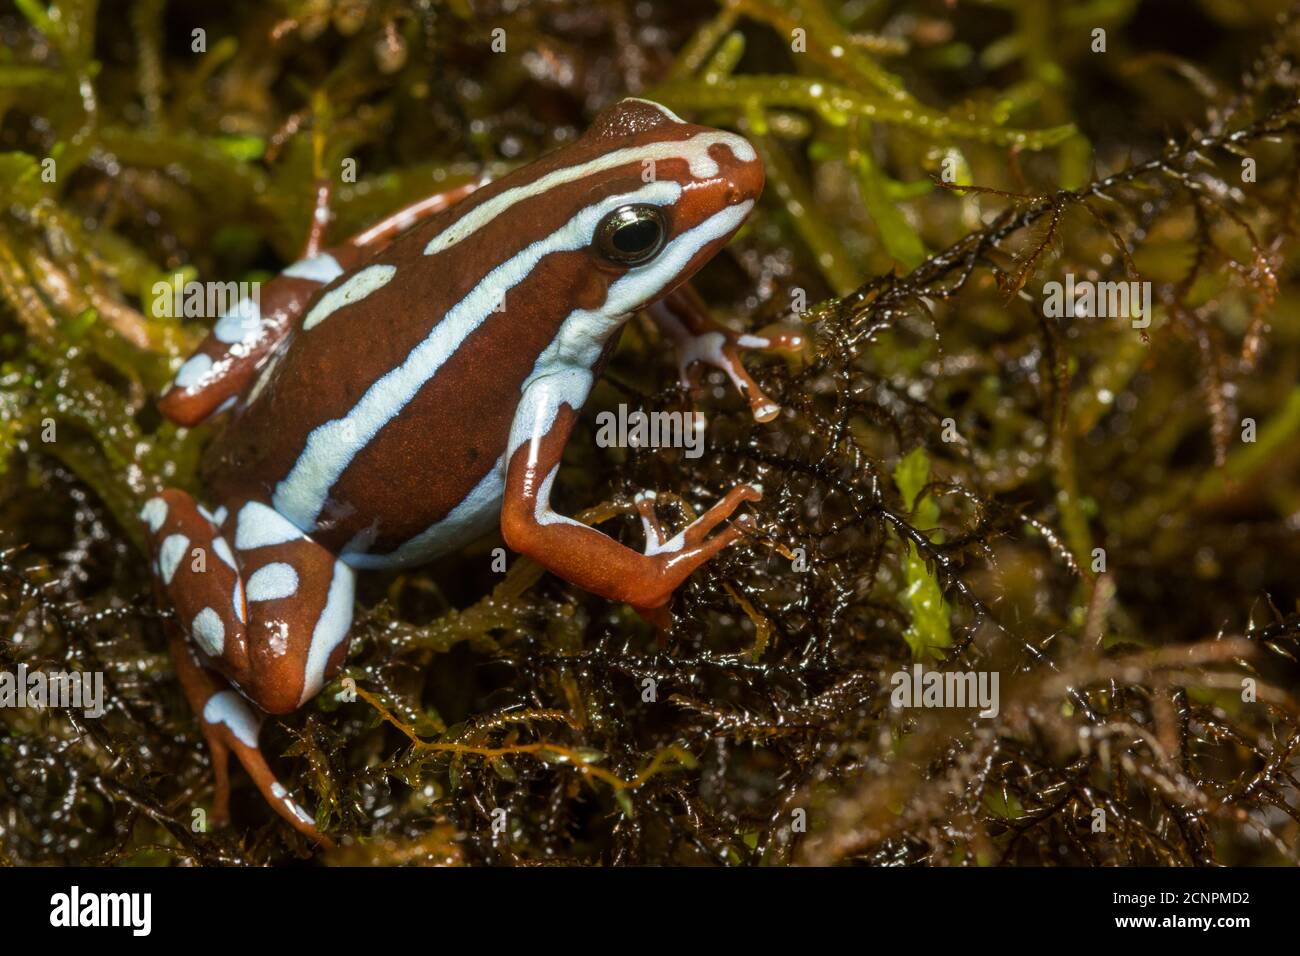 La grenouille empoisonnée d'Anthony (Epipedobates anthonyi) de l'Équateur et du Pérou est l'une des plus belles espèces de grenouilles empoisonnées. Banque D'Images